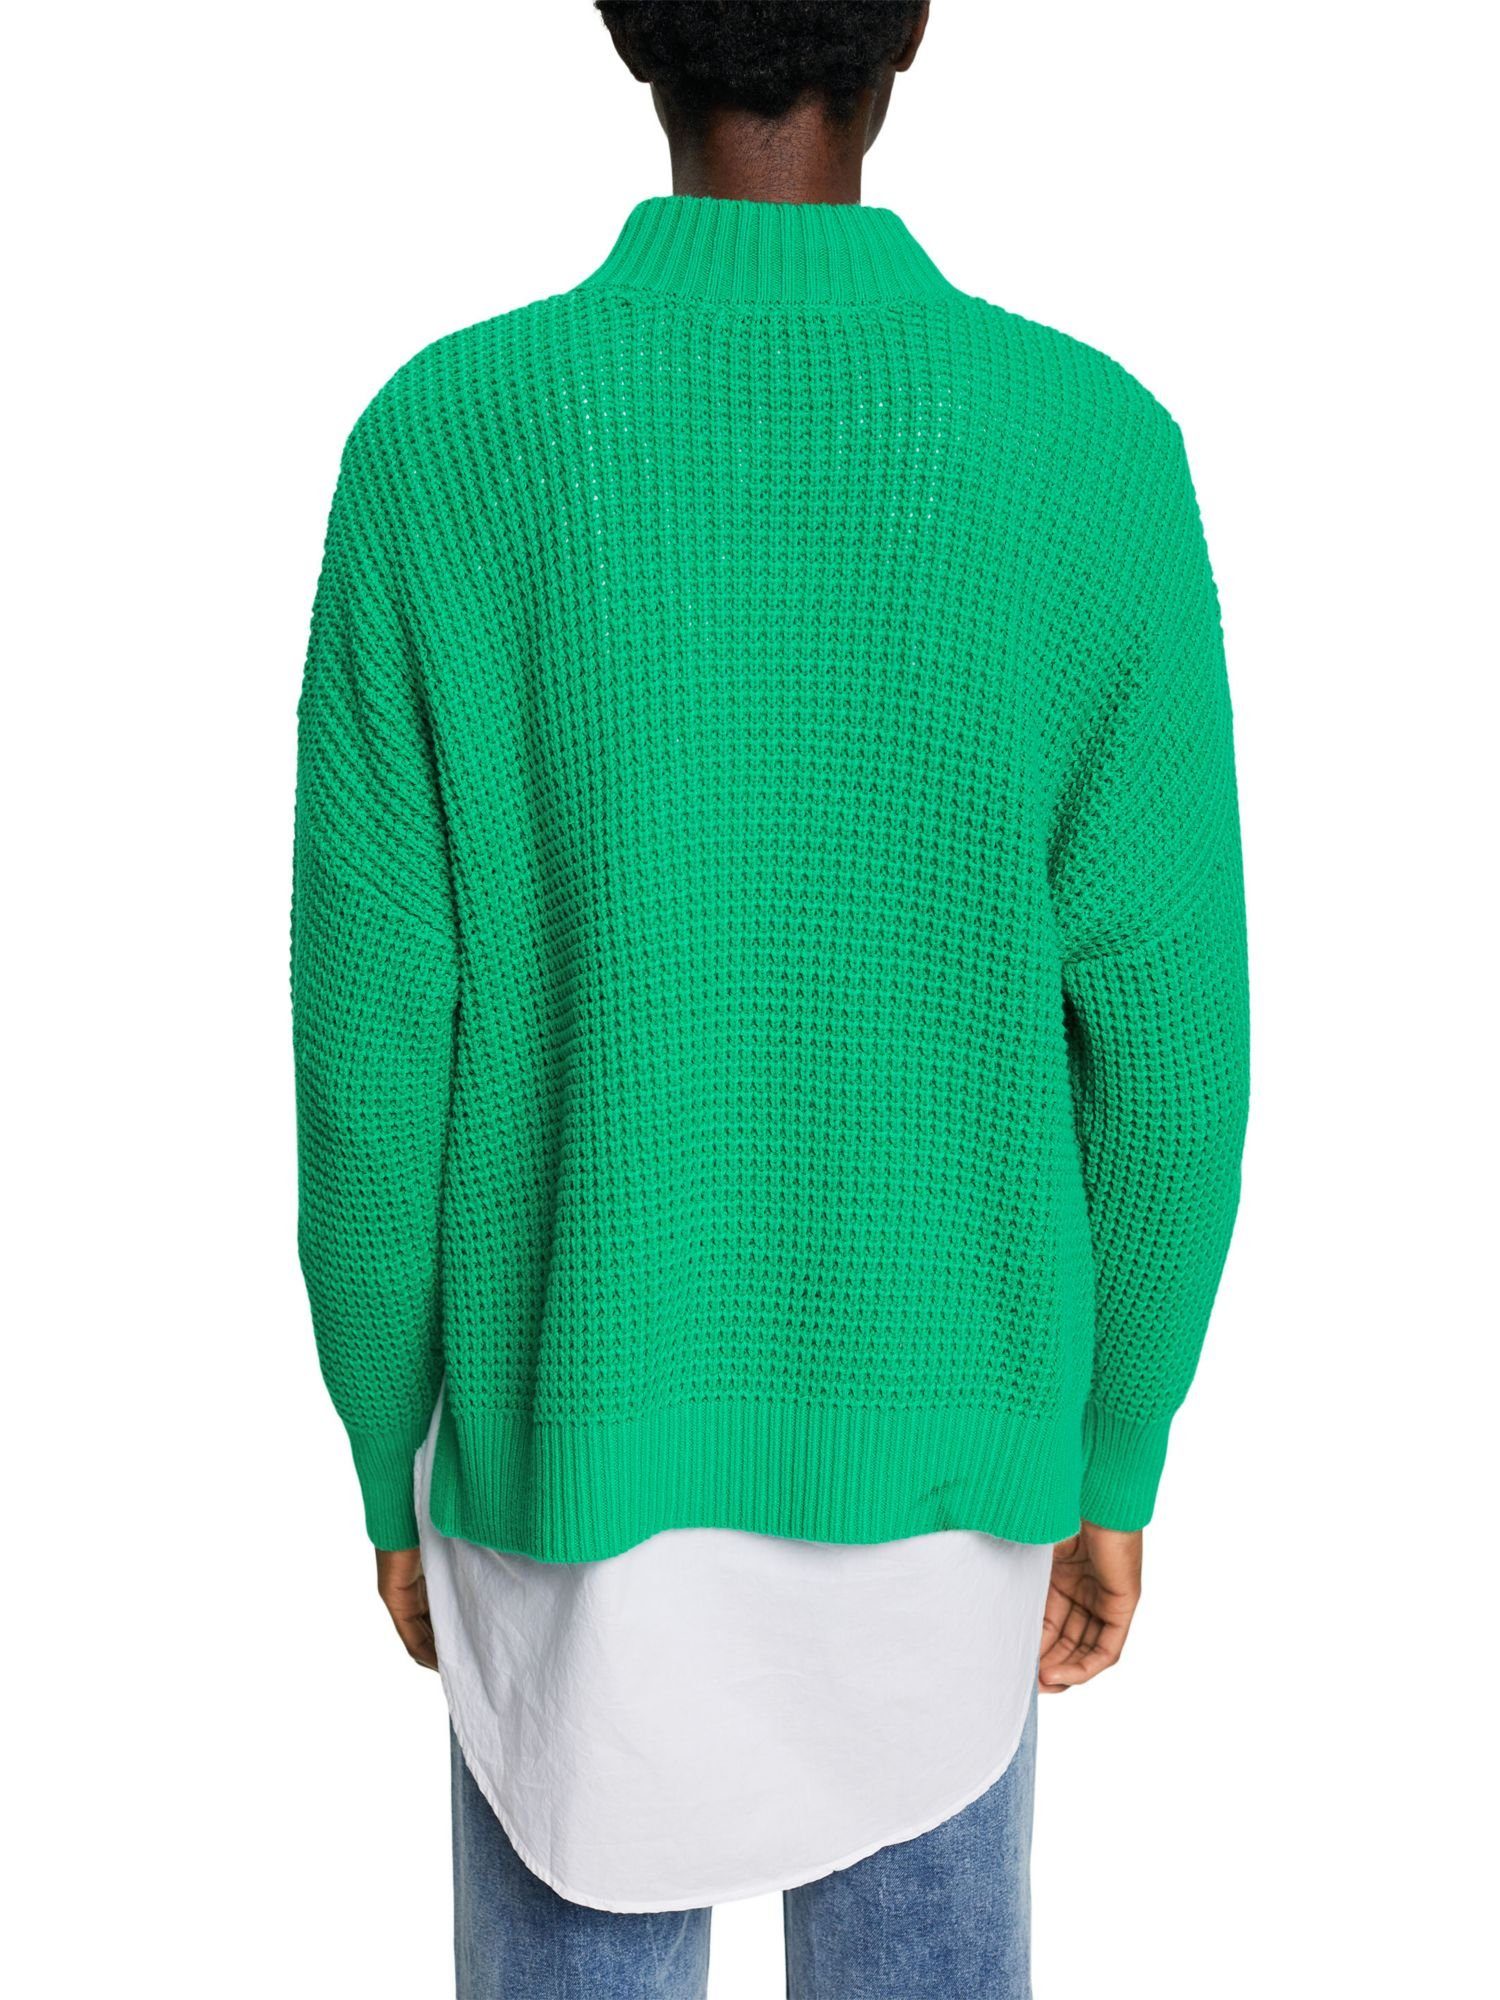 Esprit LIGHT GREEN Pullover edc mit Rundhalspullover Weiter Stehkragen by